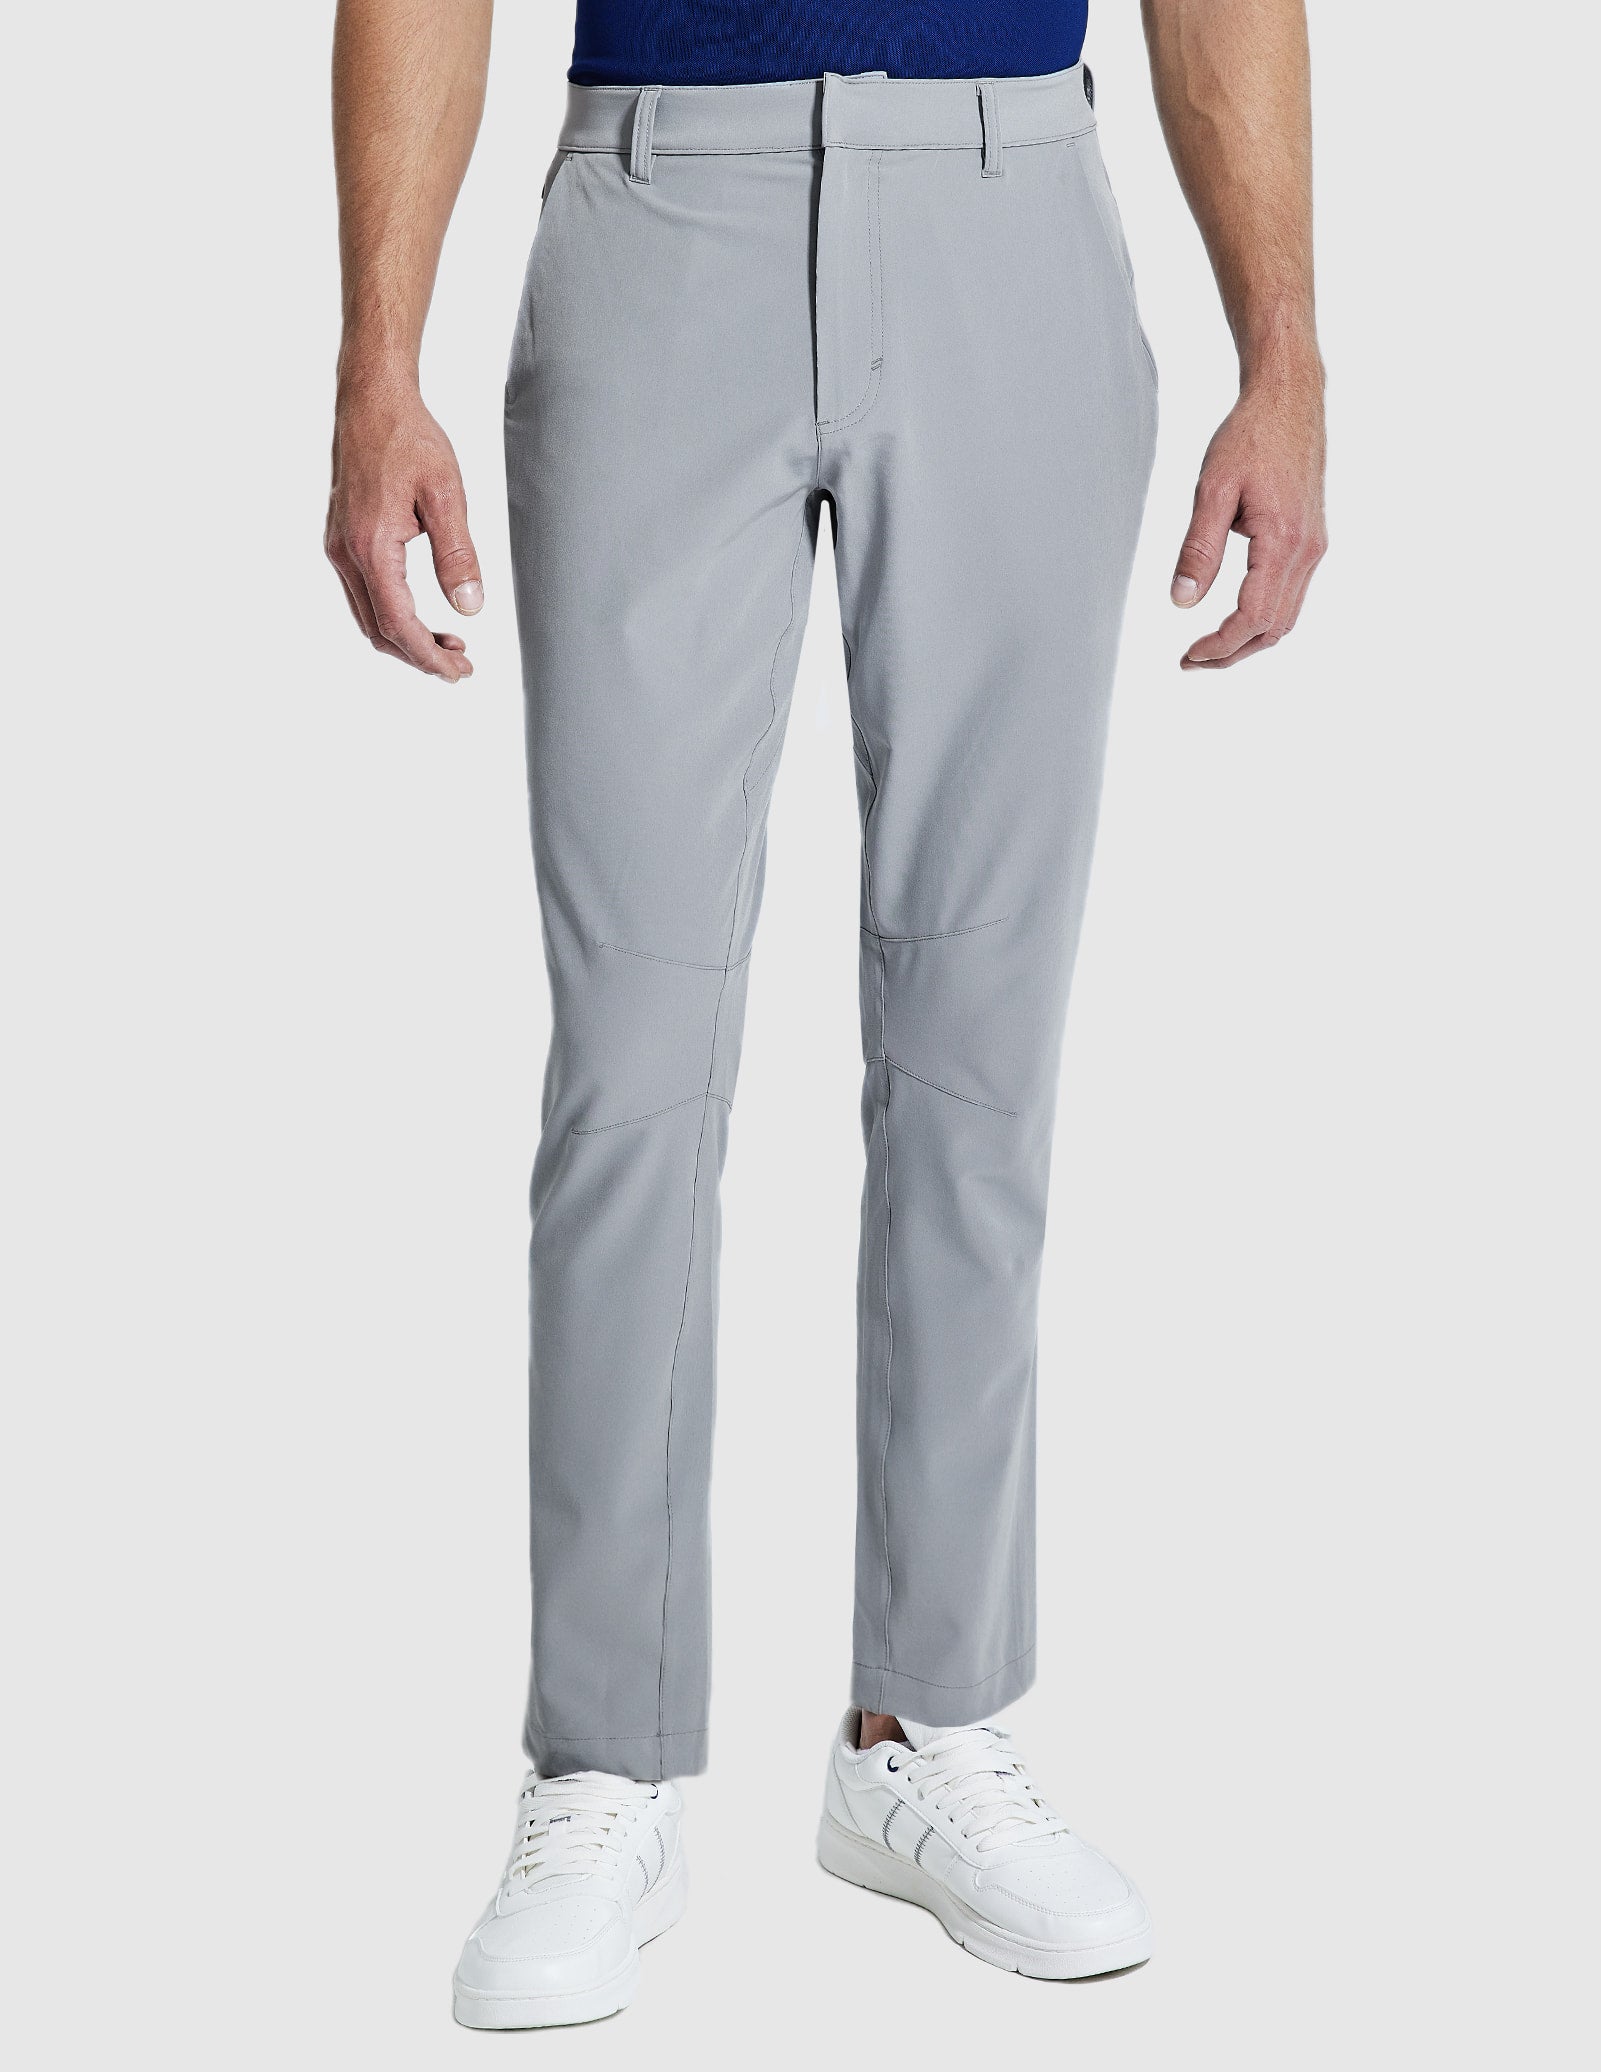 Men's Stretch Golf Pants Slim Fit Quick Dry Pants